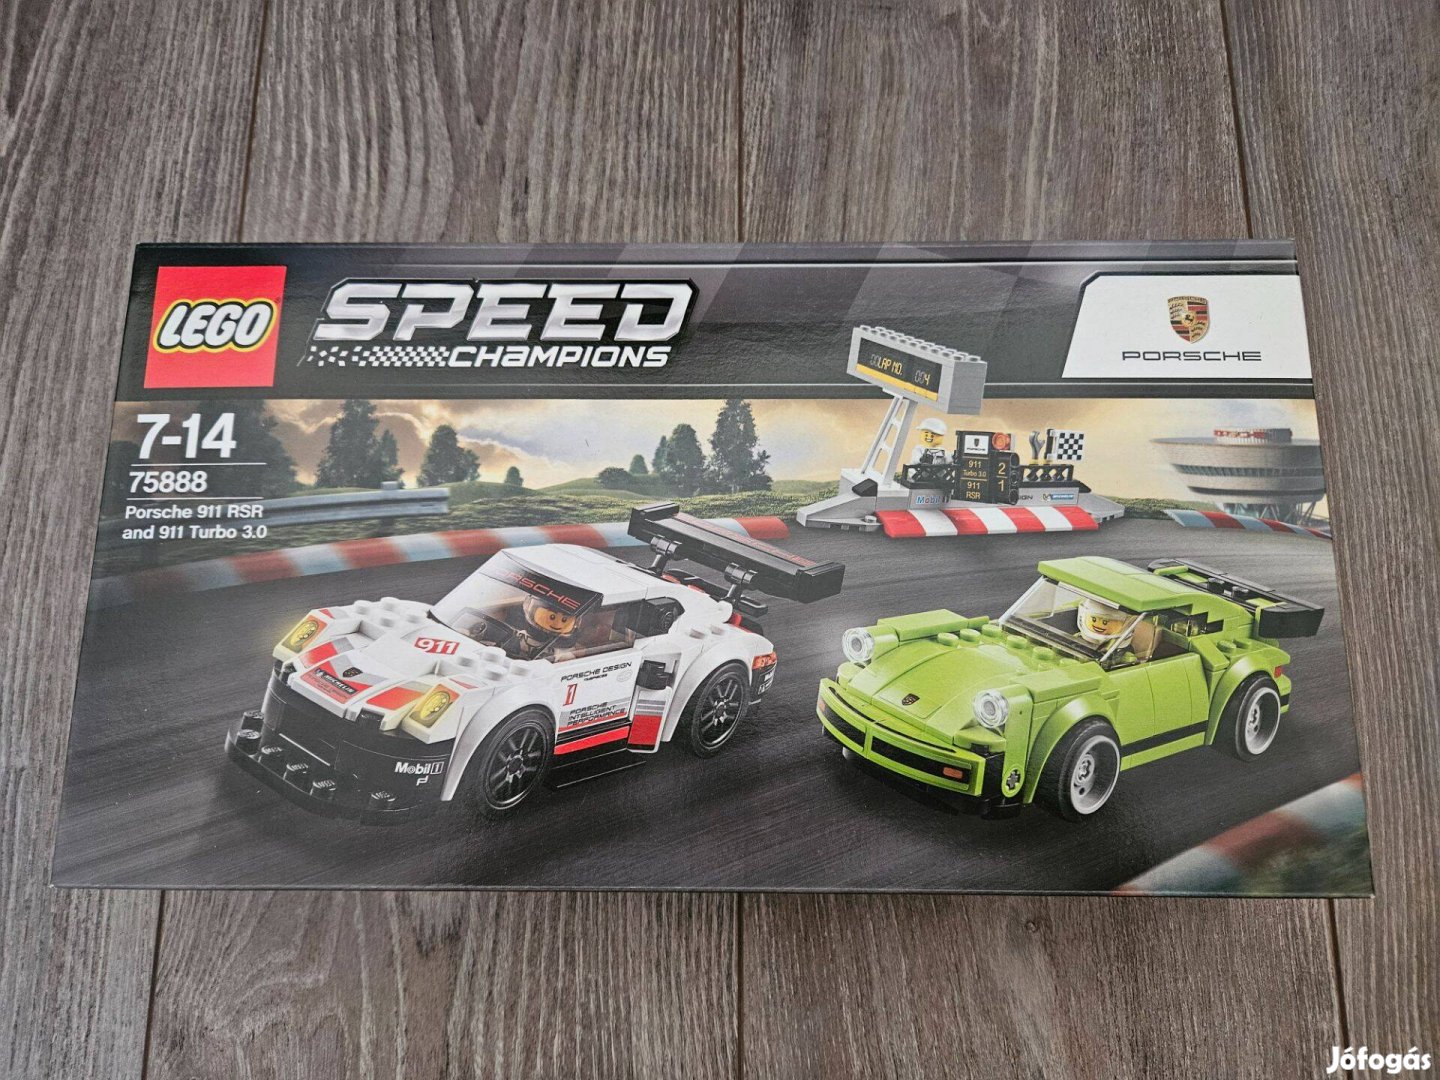 LEGO Speed Champions Porsche 911 RSR + 911 Turbo 75888 új eladó!